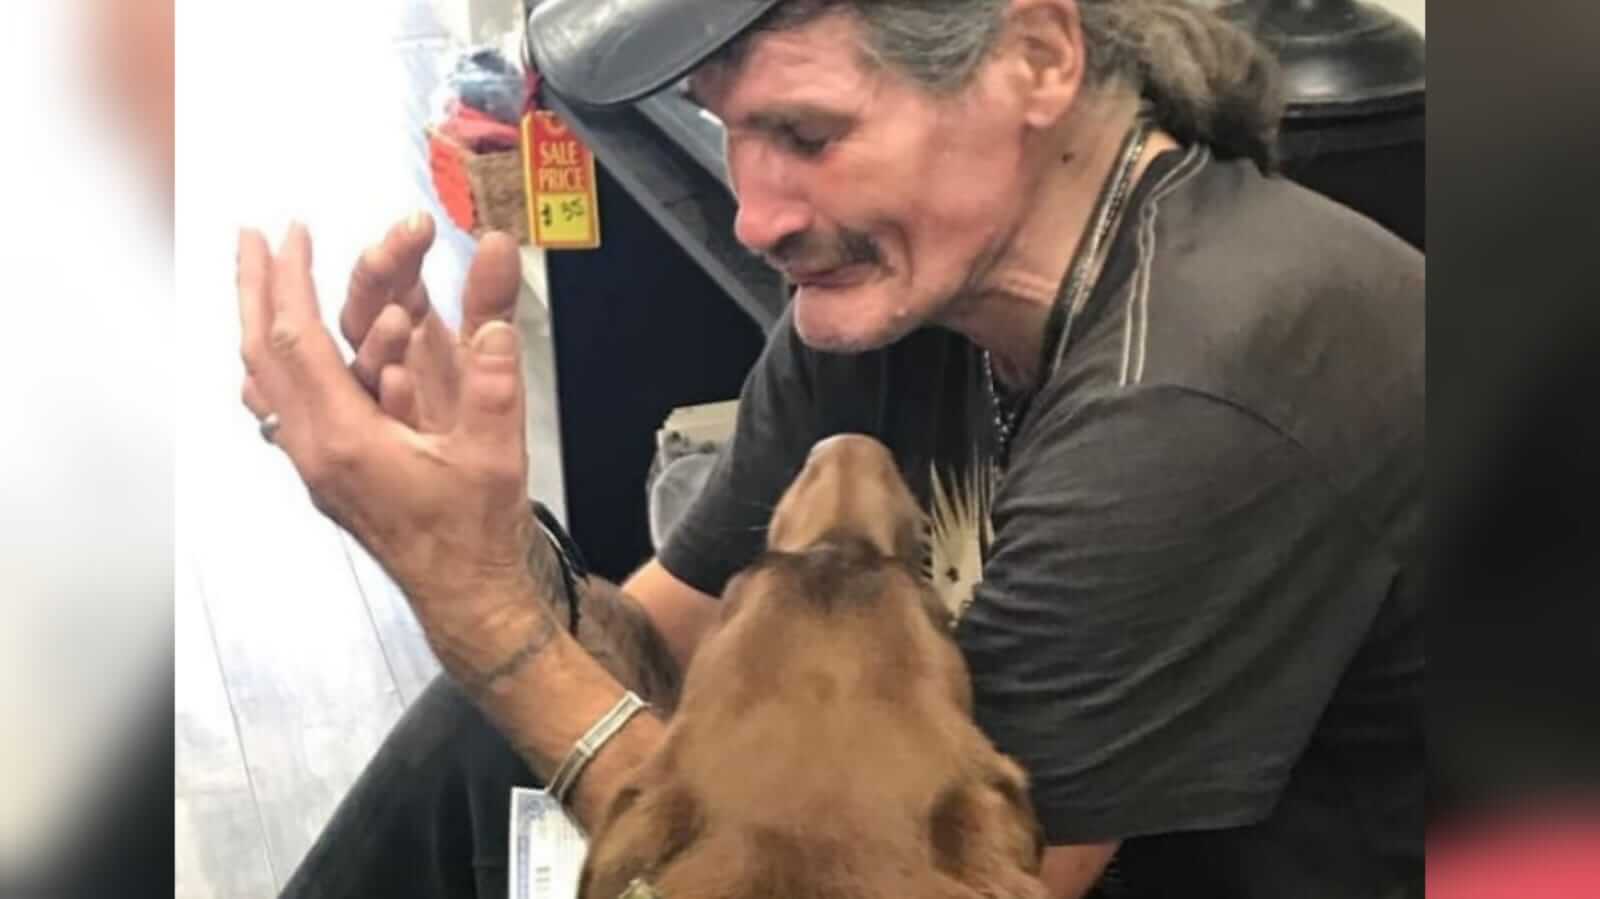 Homem chorando ao lado de cachorro